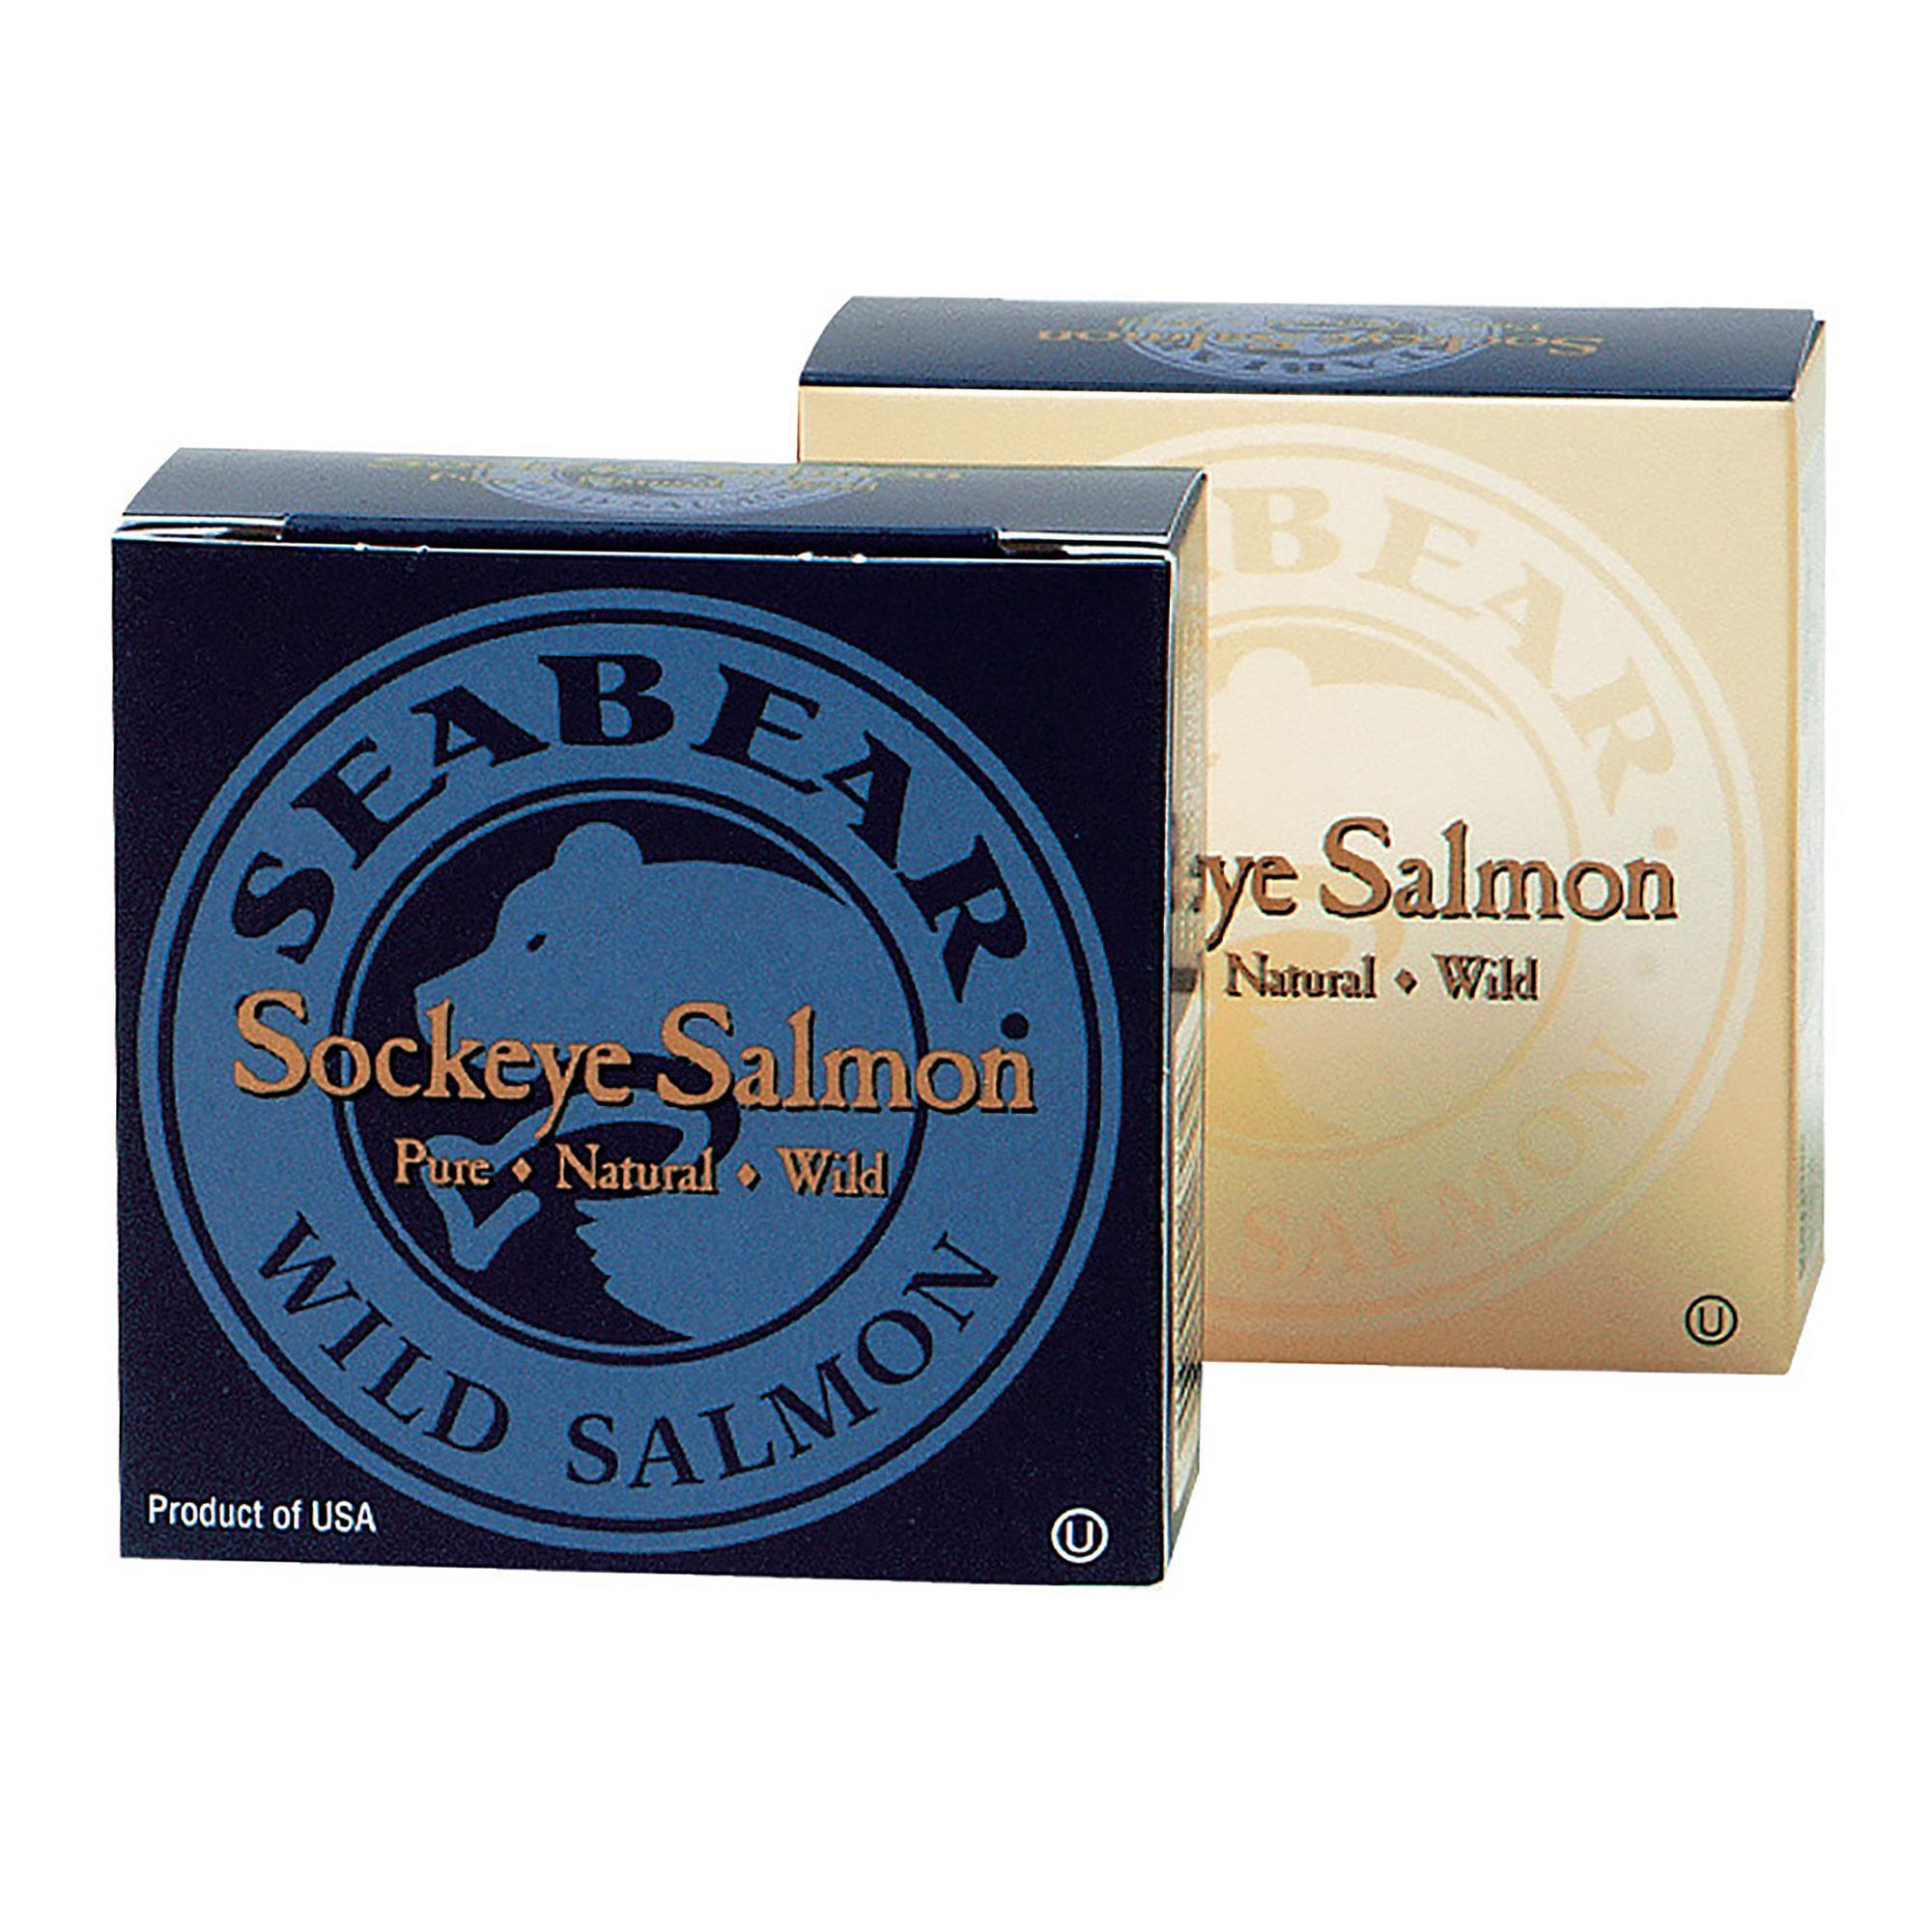 Seabear Smokehouse Sockeye Salmon Canned 3.75oz NWFG - SeaBear